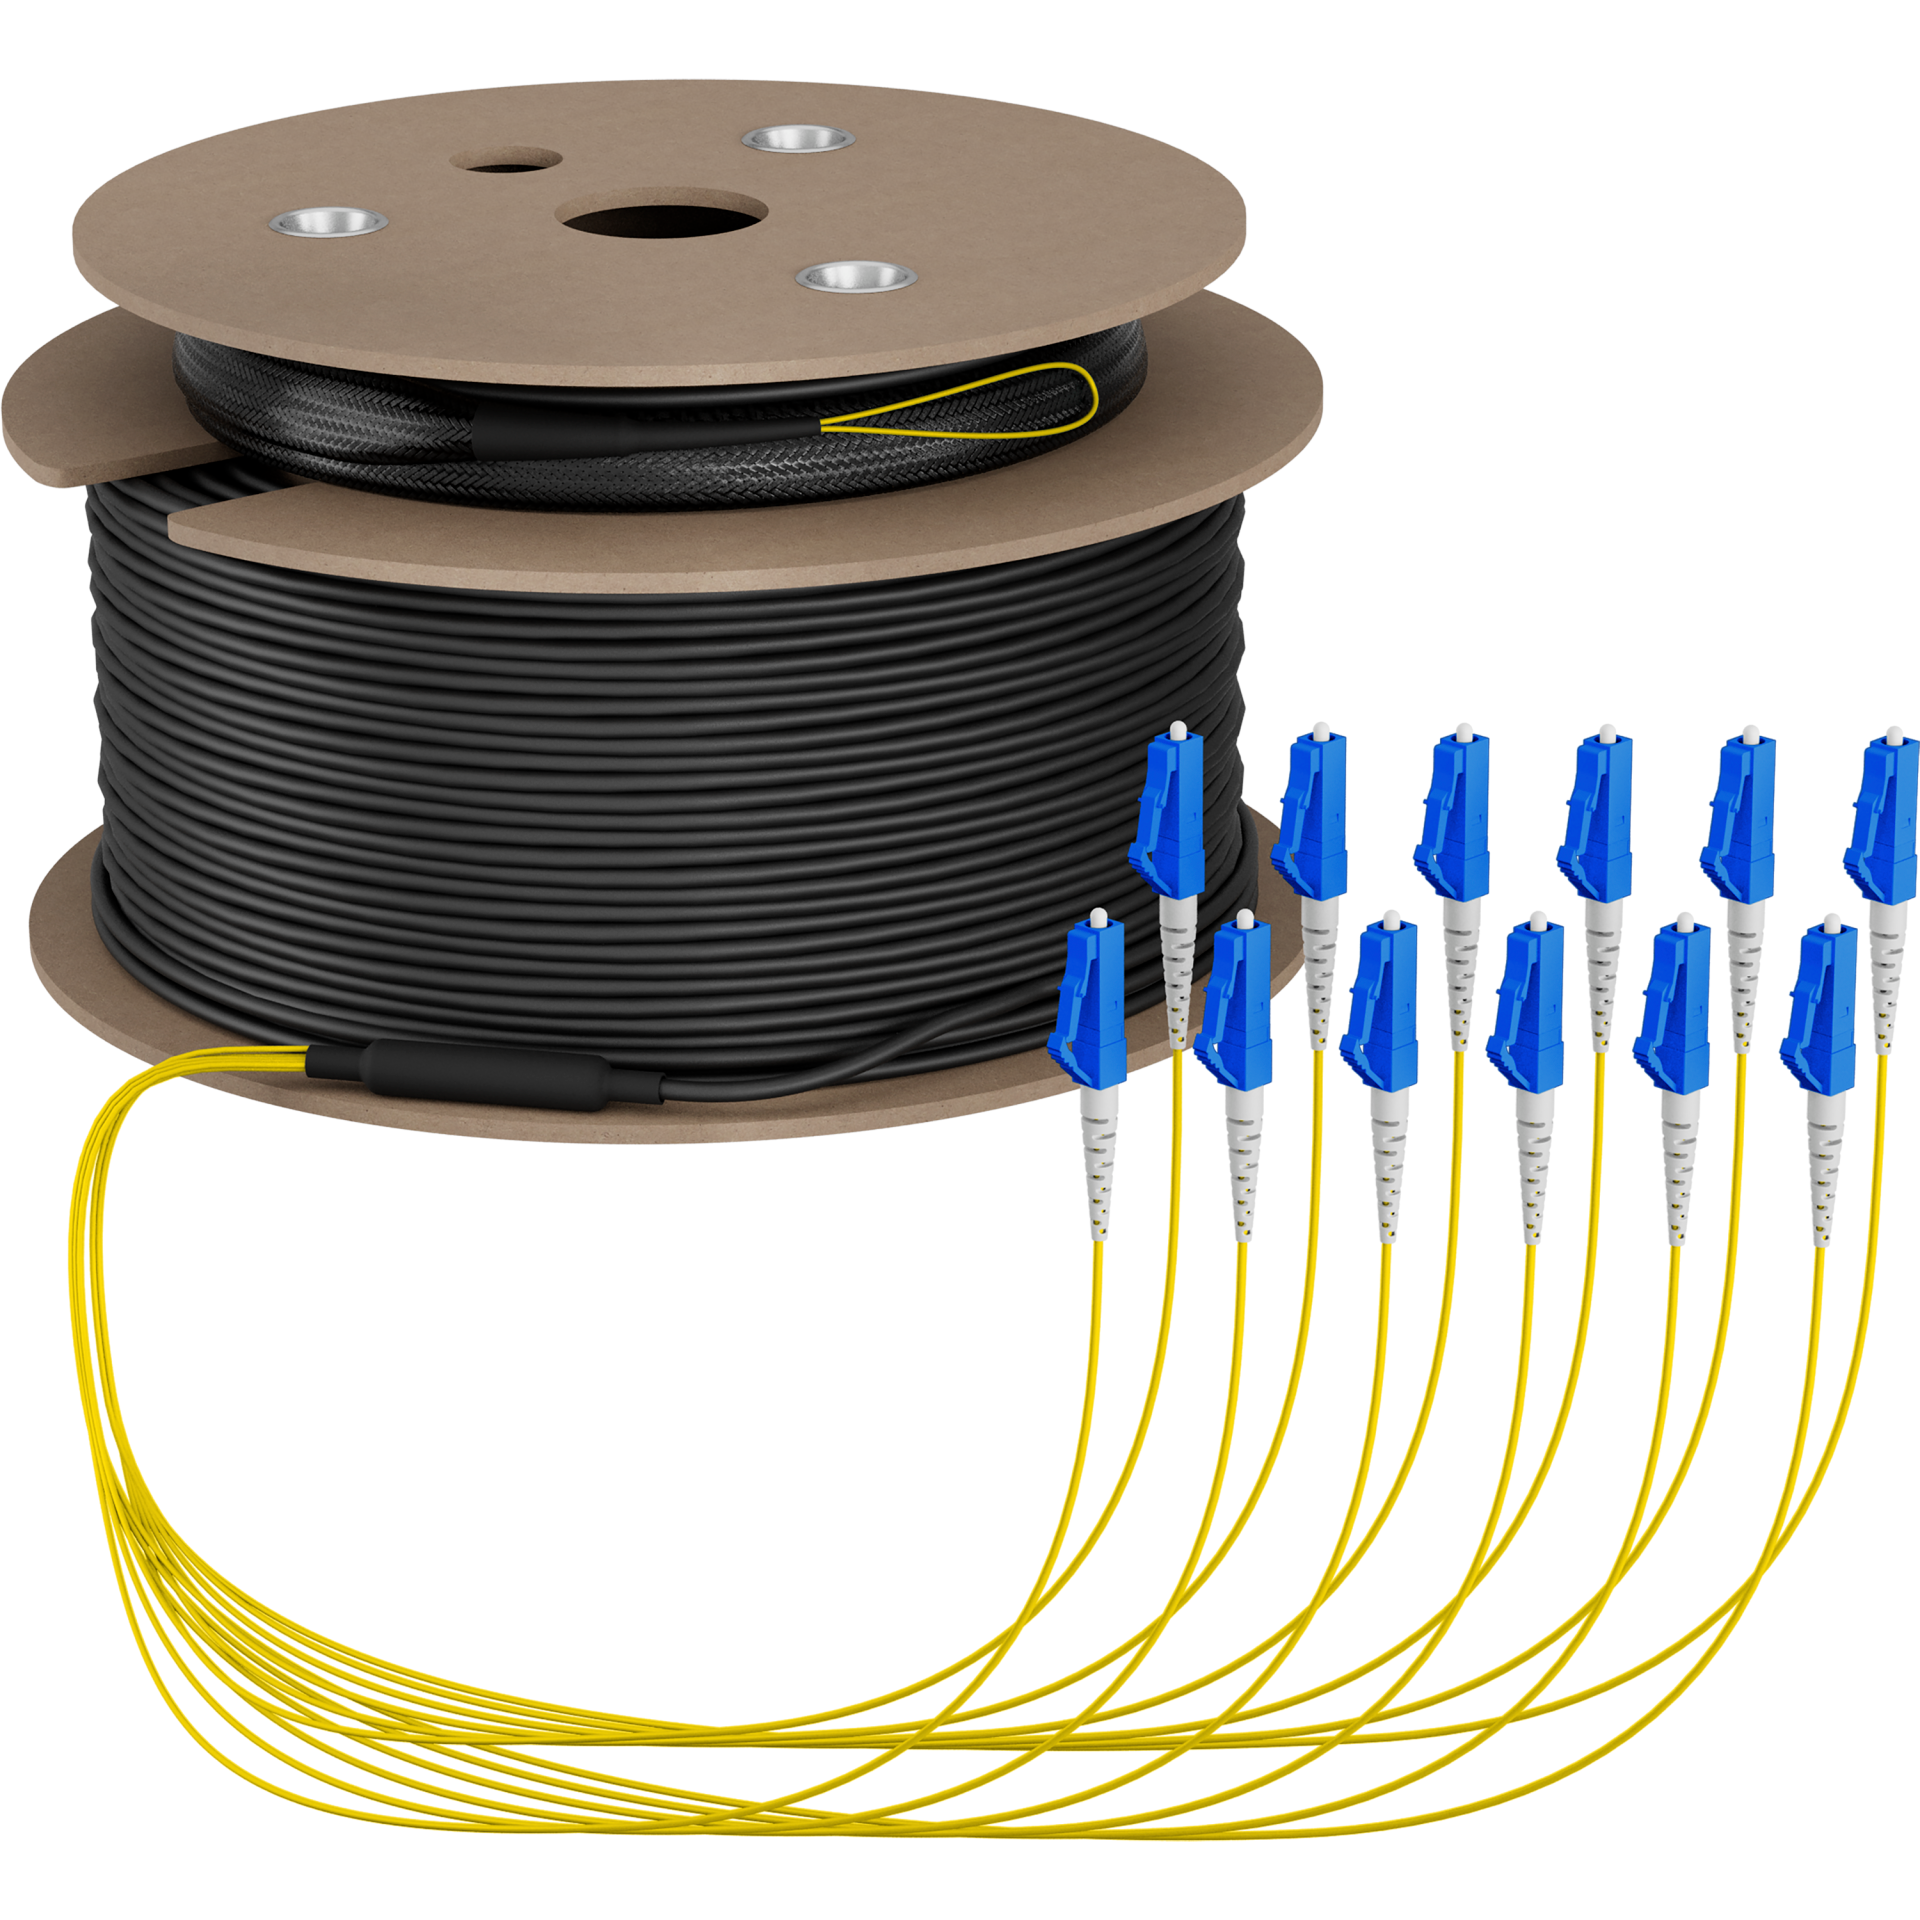 Trunk cable U-DQ(ZN)BH OS2 12E (1x12) LC-LC,50m Dca LSZH